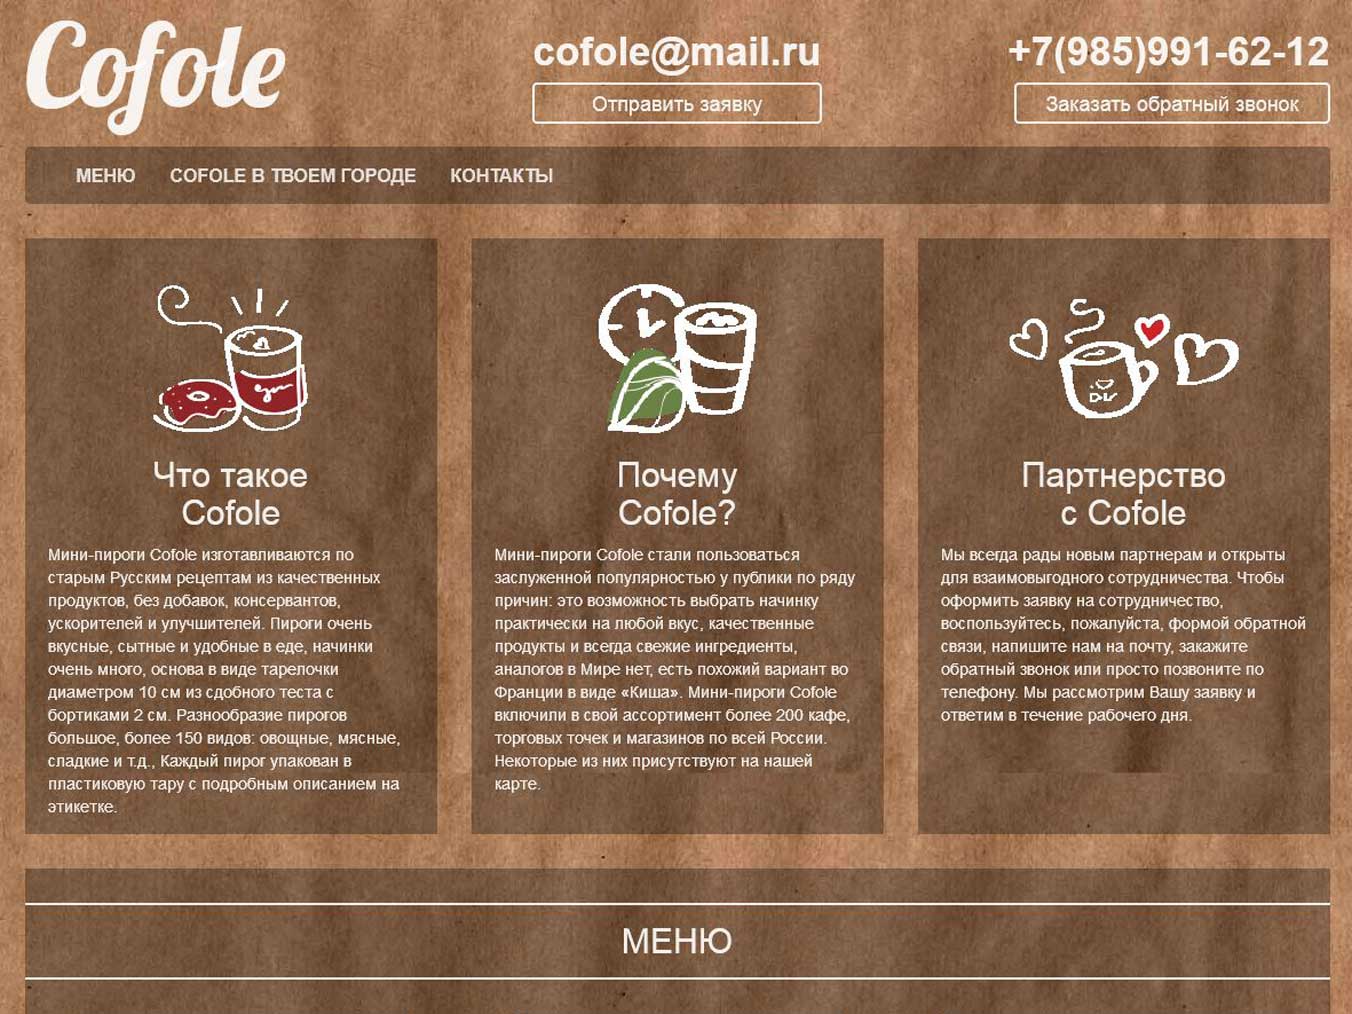 Как организовать бизнес «кофе с собой»: подробно